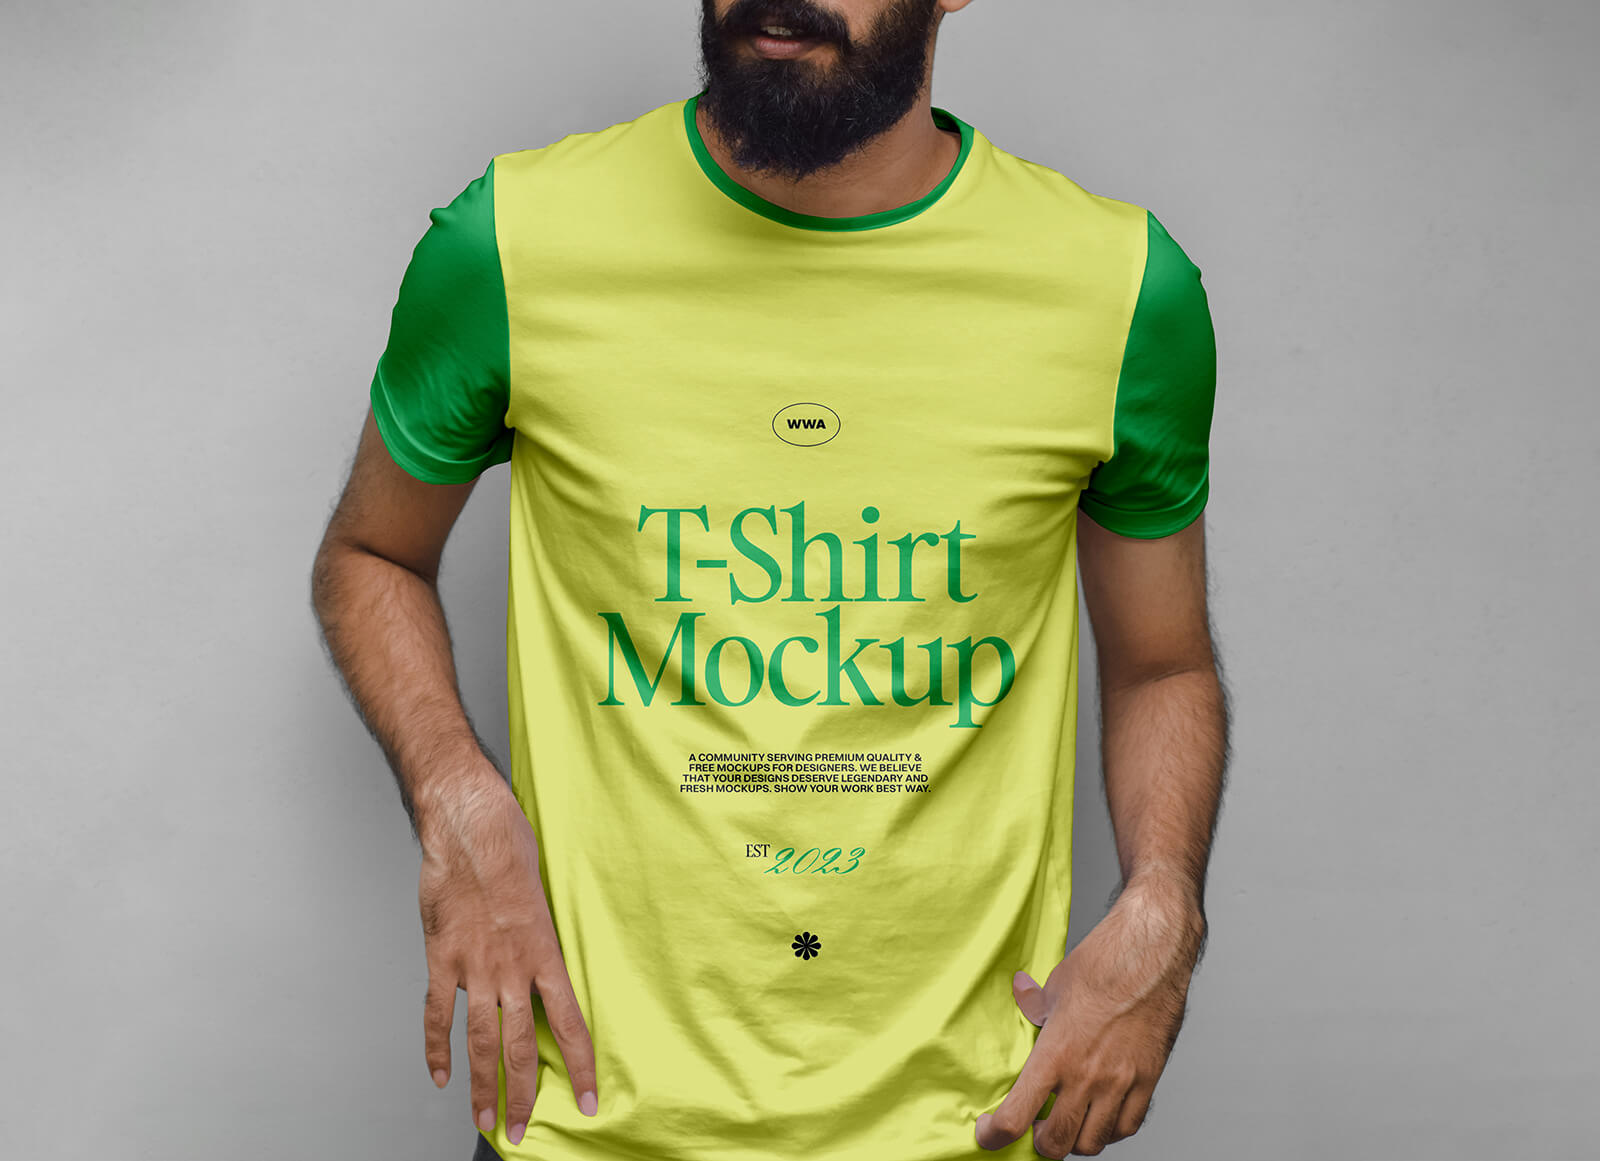 Beard Man в макете футболки